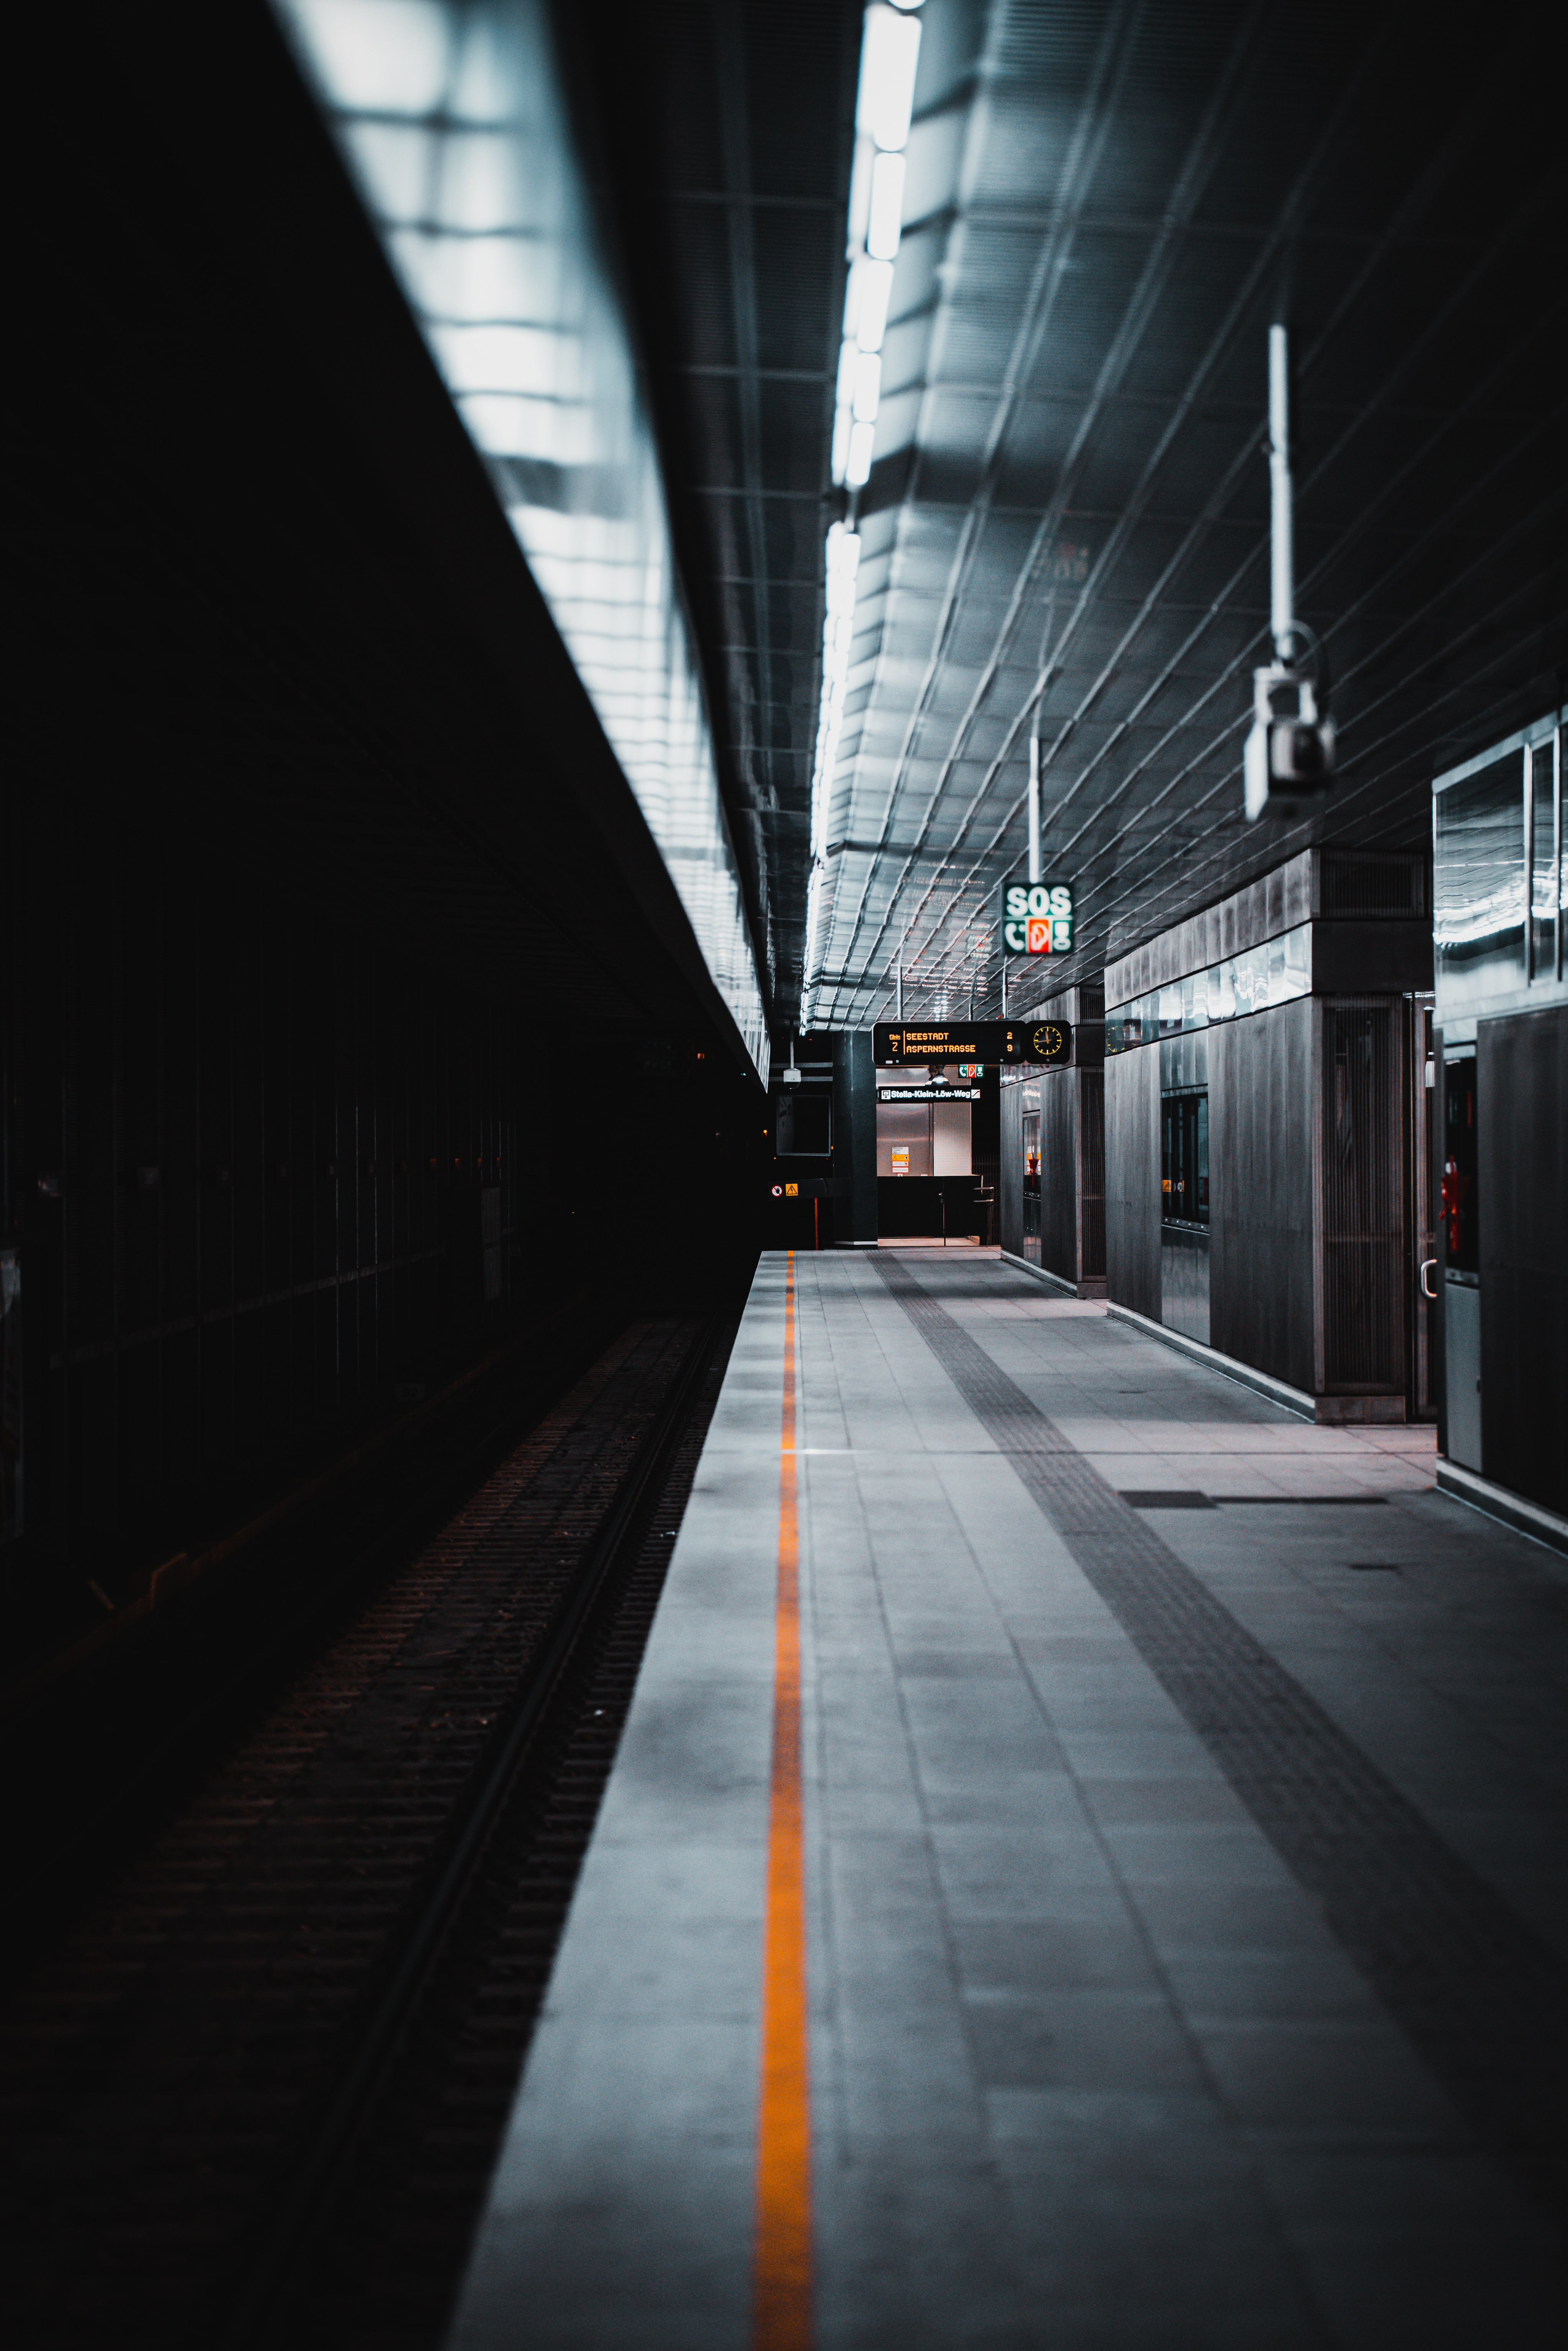 android subway, miscellaneous, station, interior, miscellanea, metro